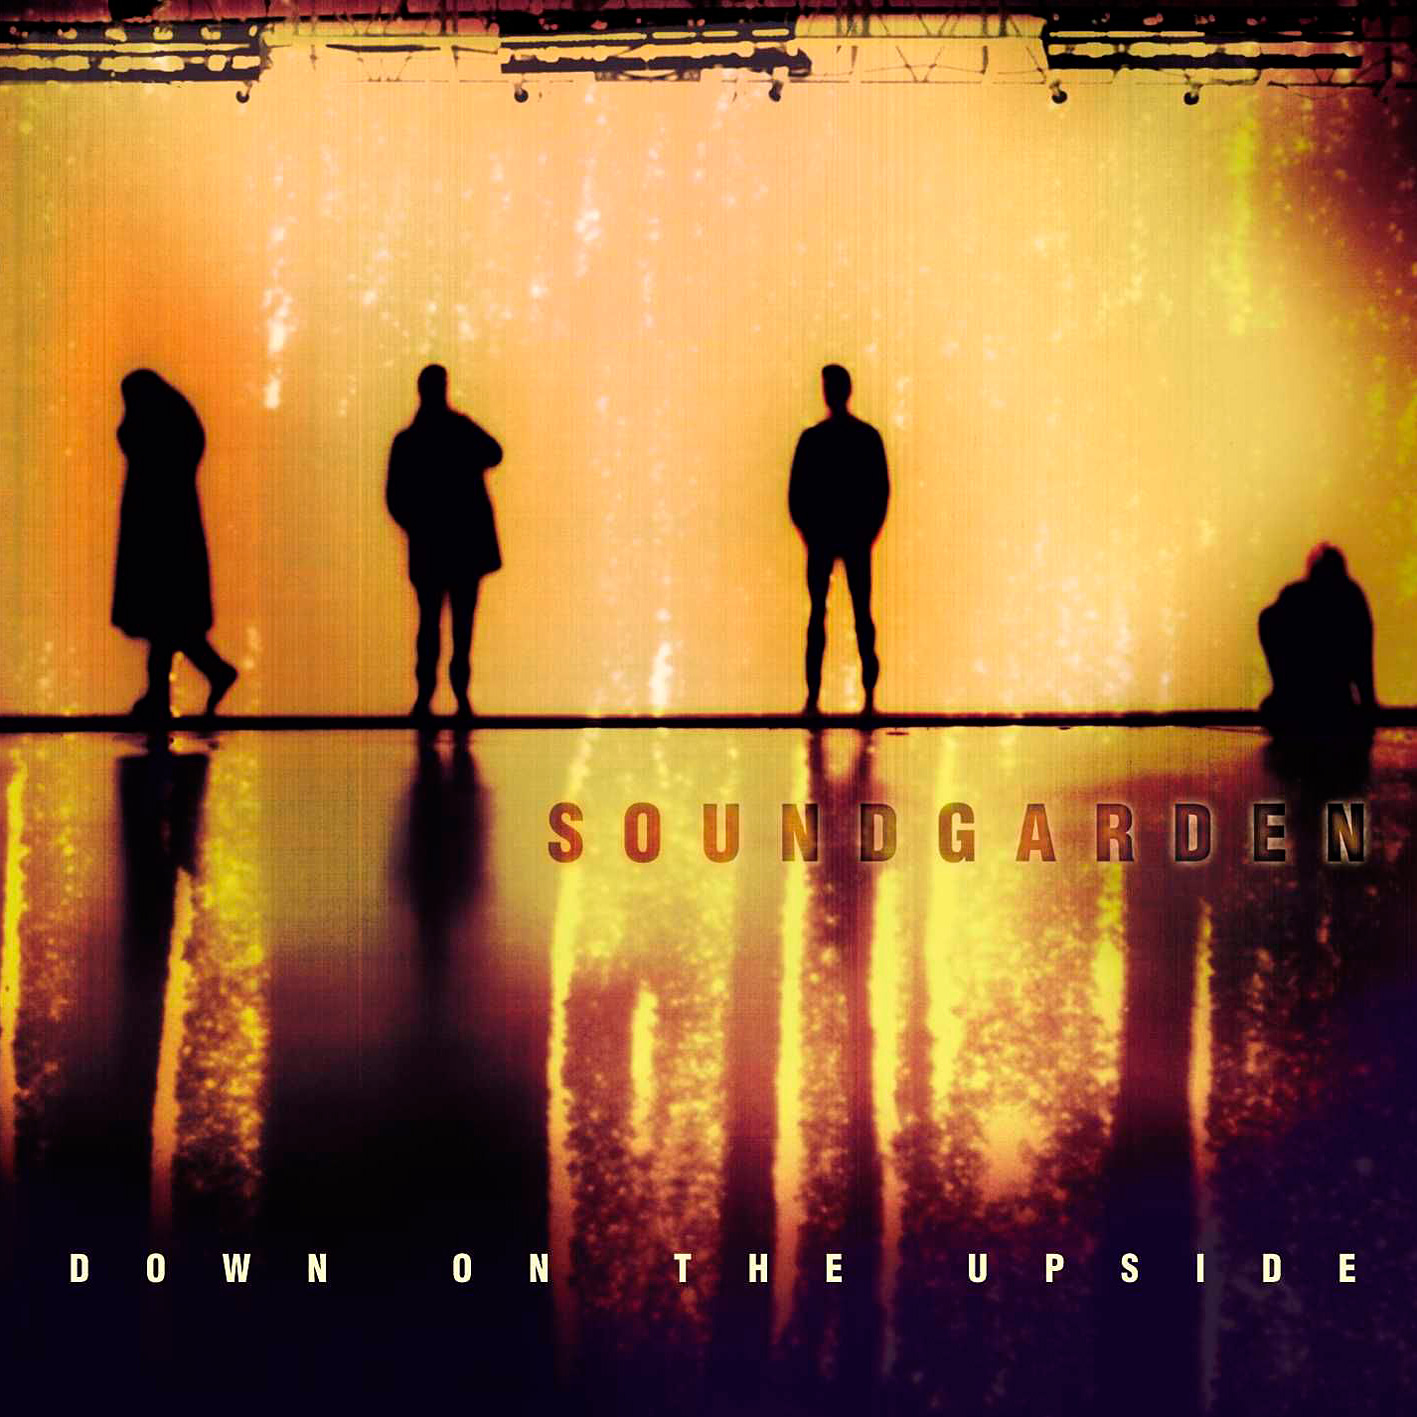 Soundgarden – Down On The Upside (1996/2016) [HDTracks FLAC 24bit/192kHz]